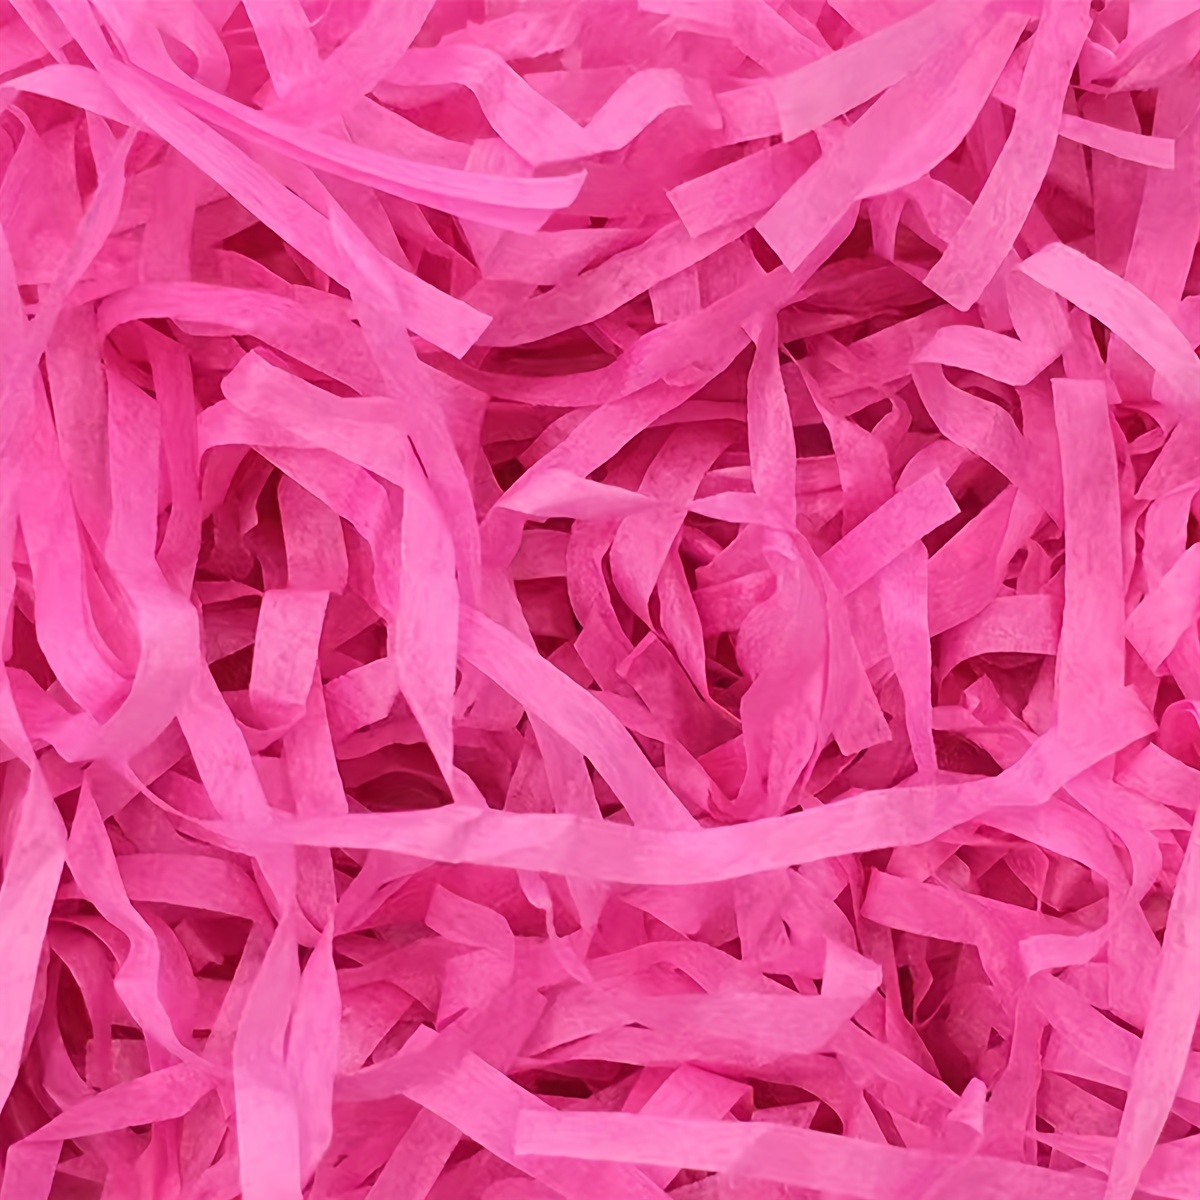 Pink Shredded Tissue Paper 25g